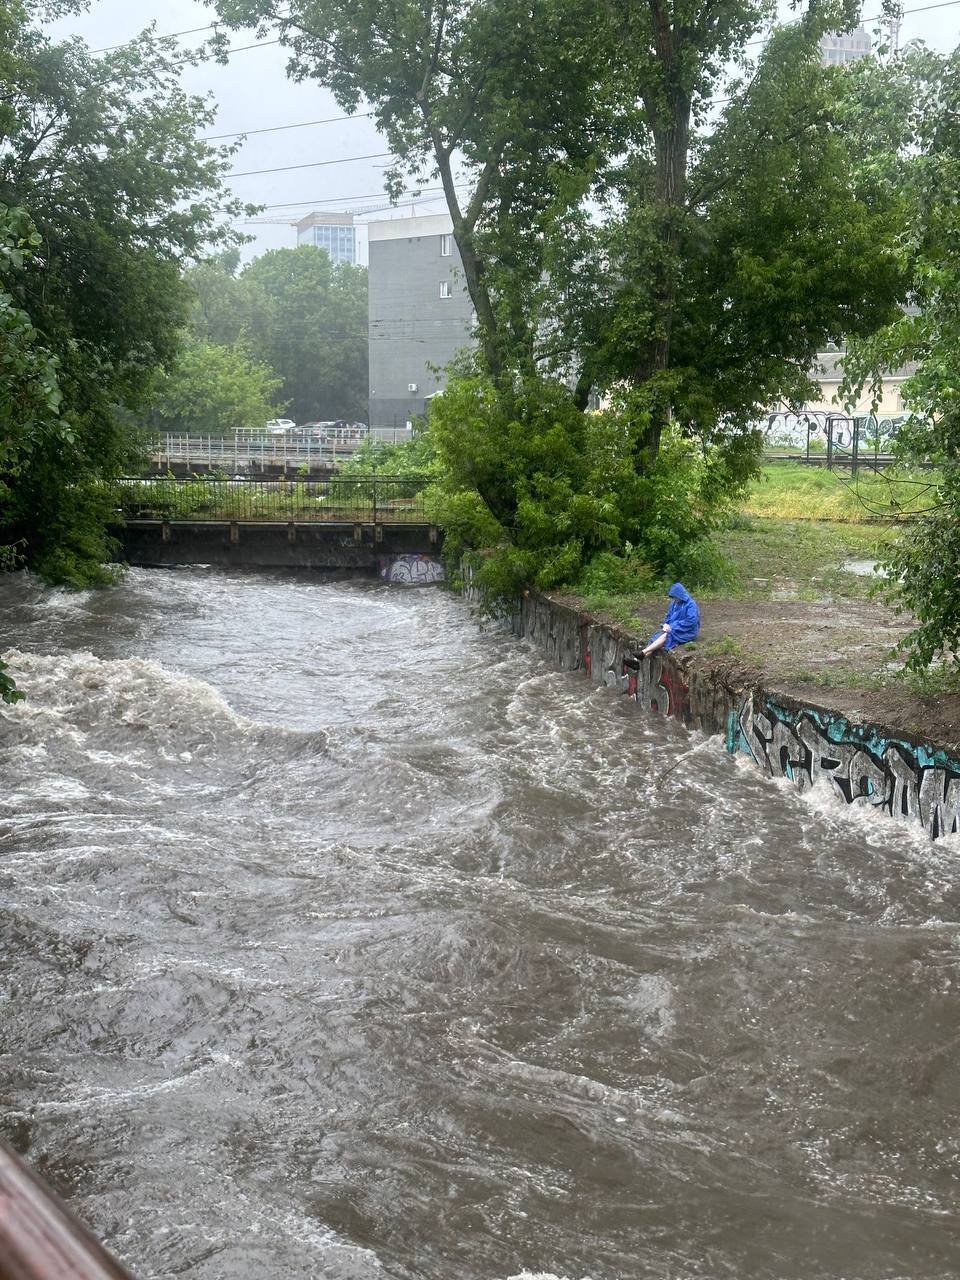 Дороги перетворились на озера: Київ накрила потужна злива, комунальники працюють у посиленому режимі. Подробиці, фото і відео